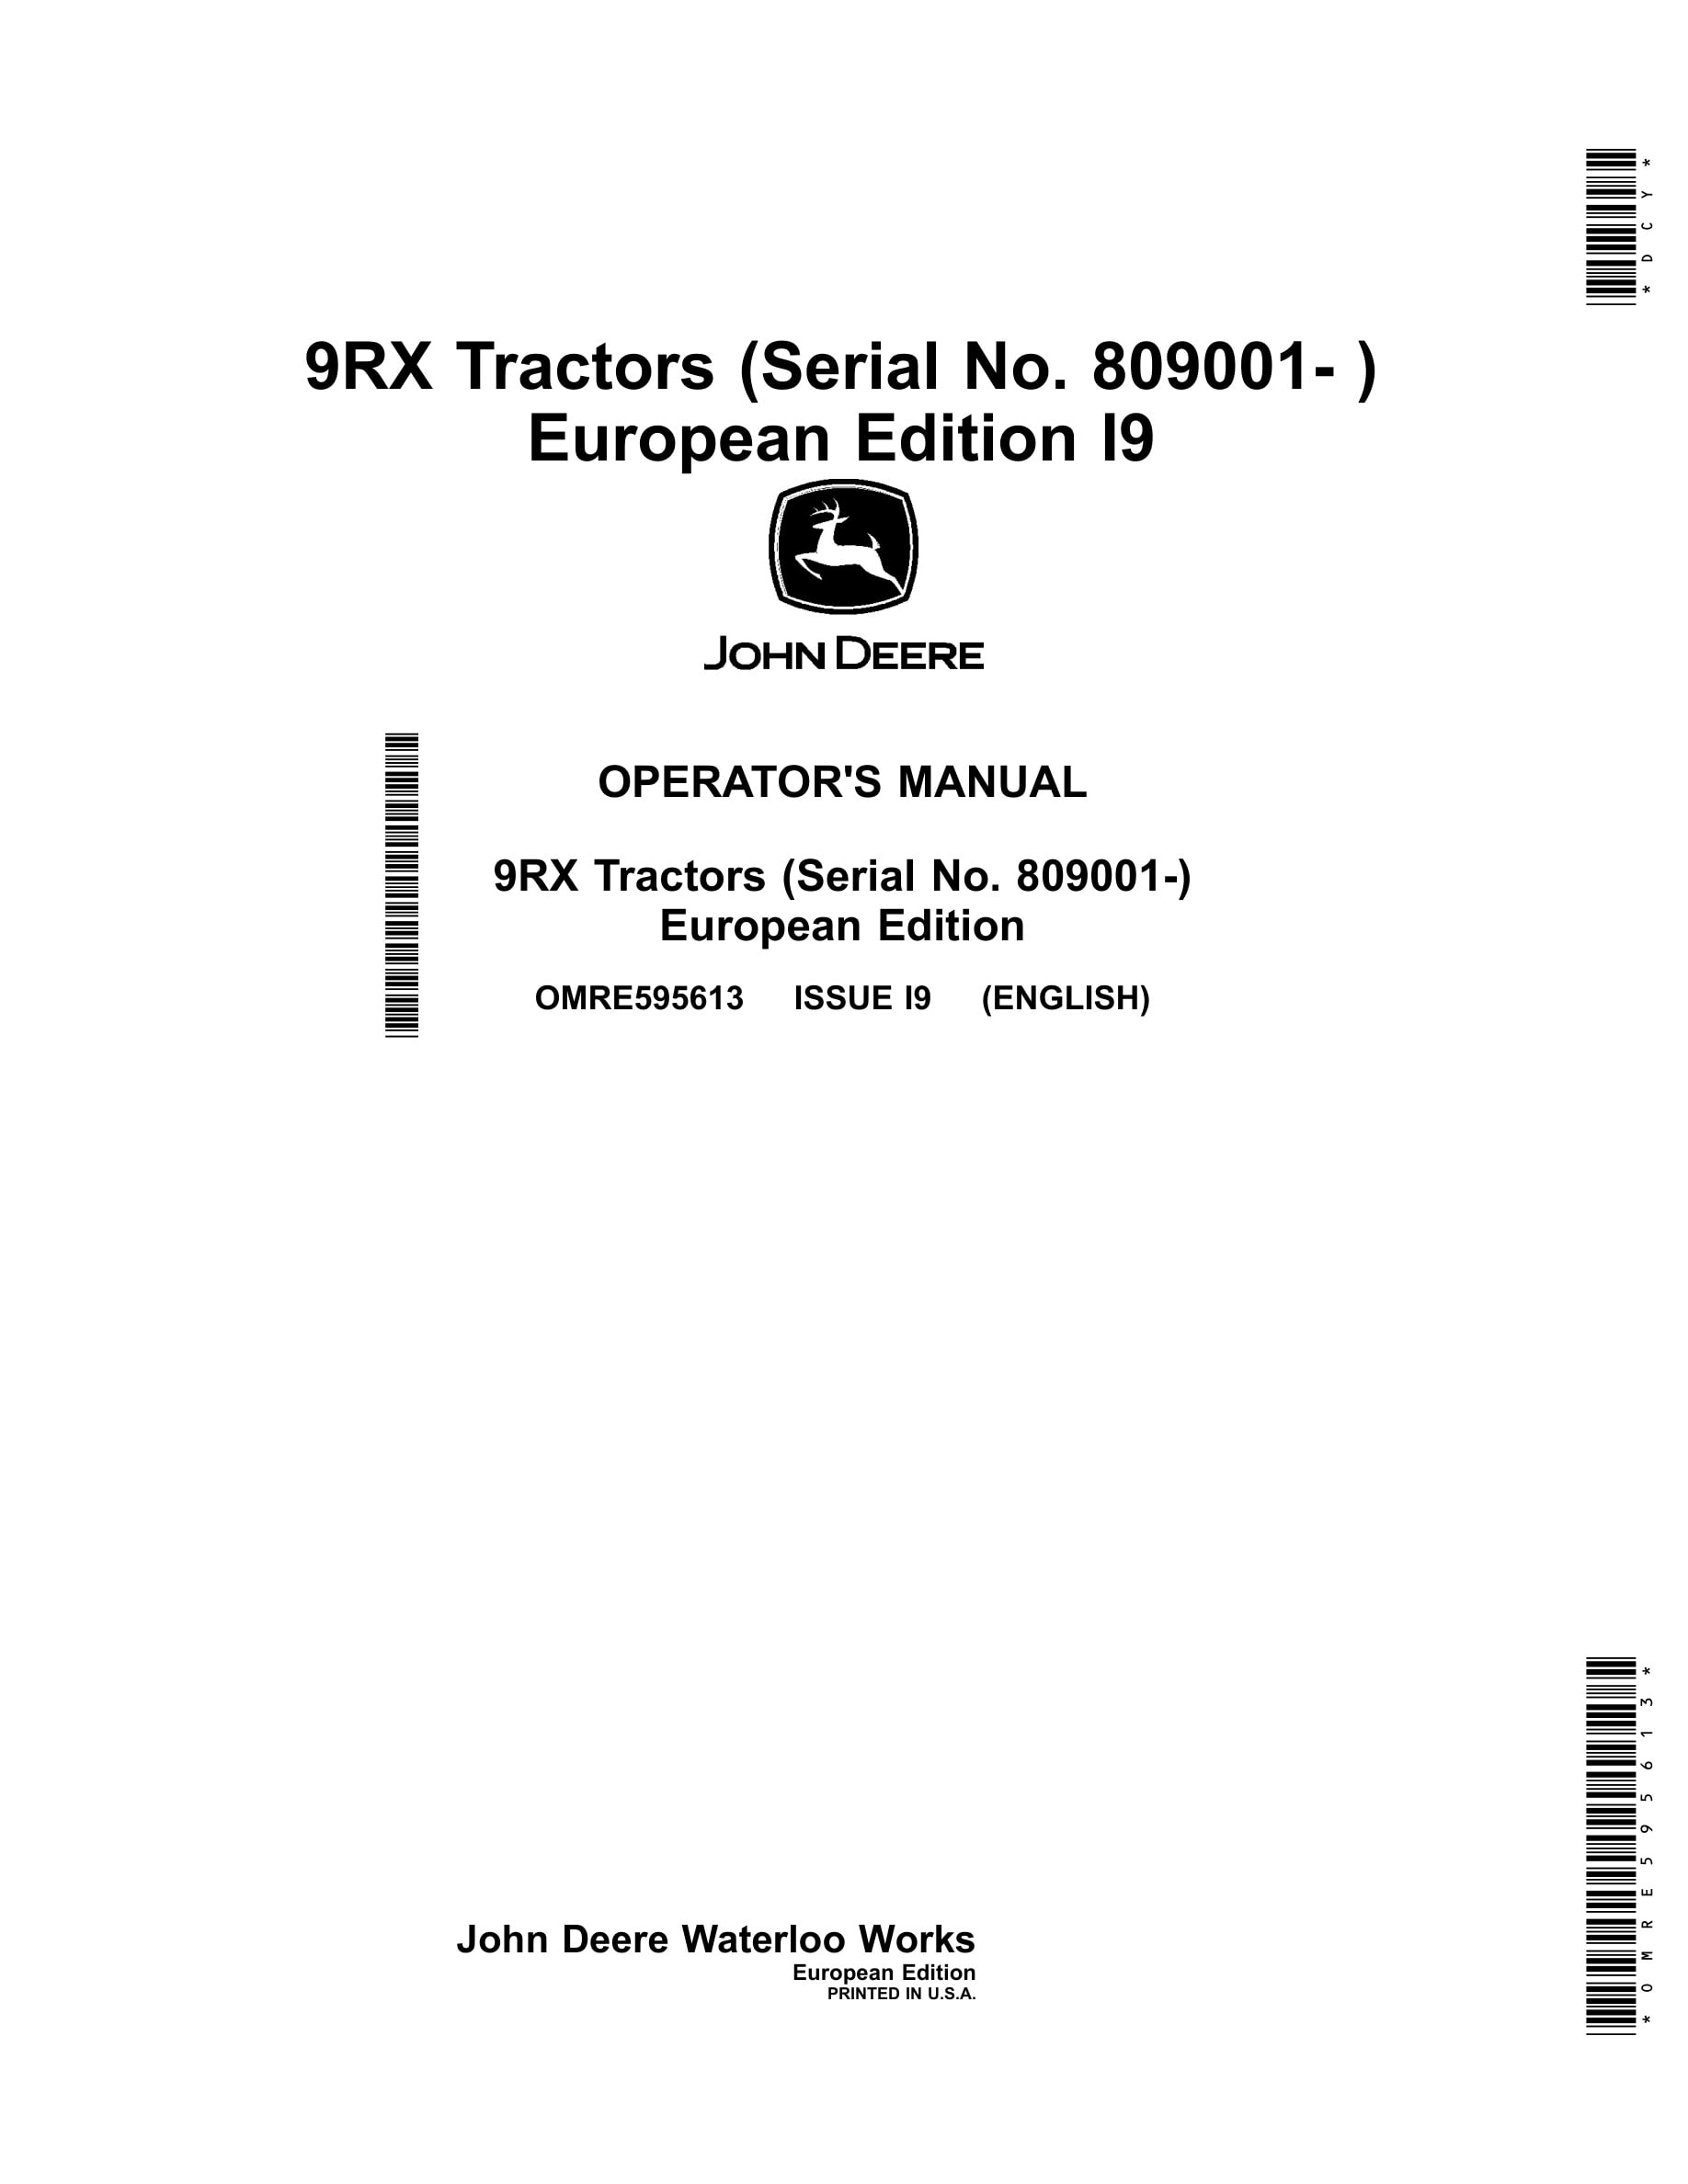 John Deere 9rx Tractors Operator Manuals OMRE595613-1